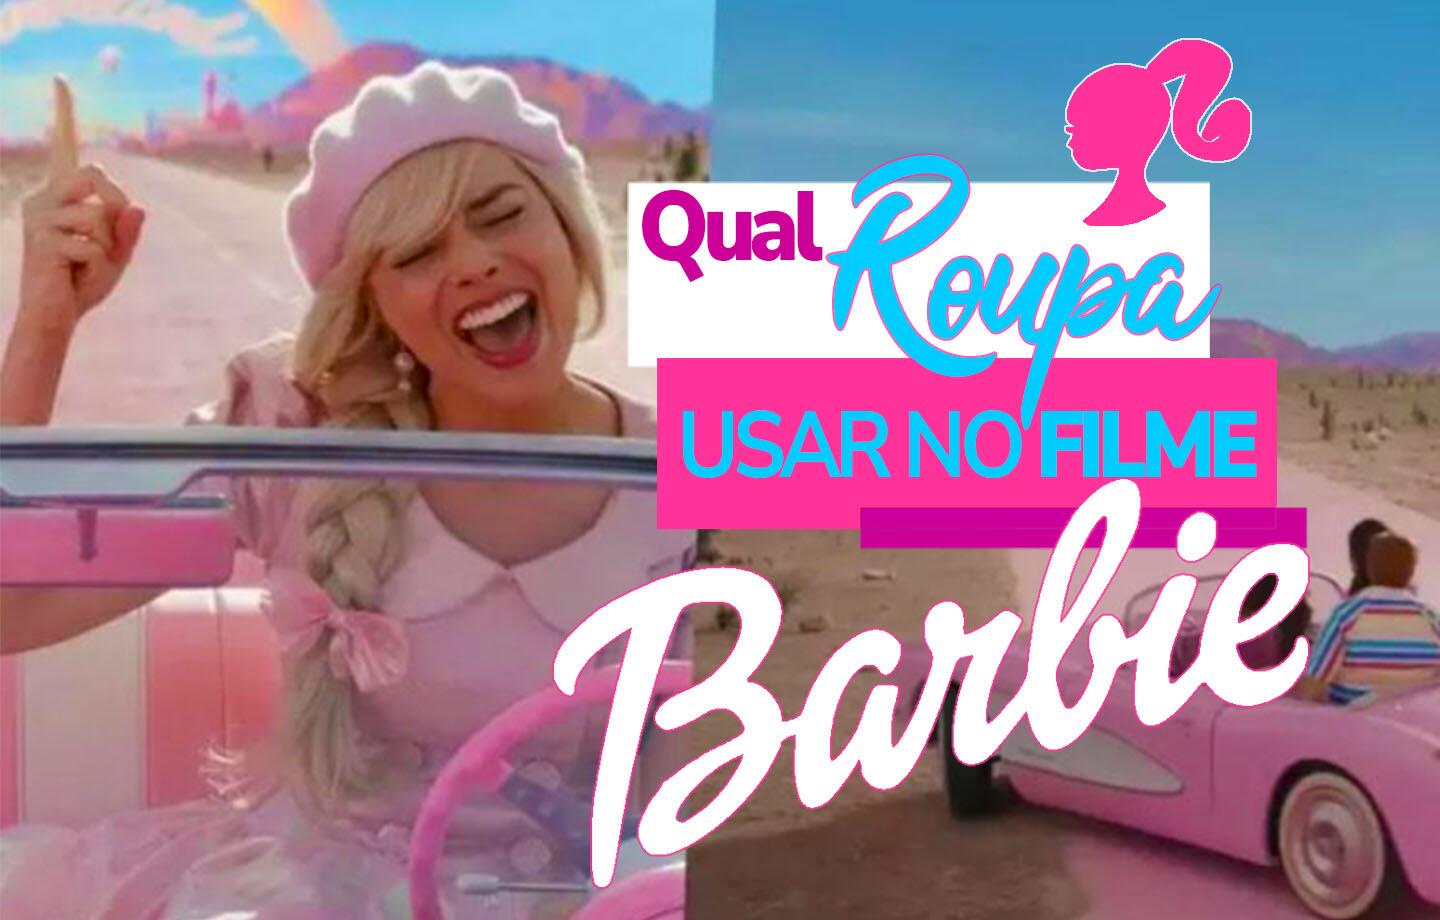 Make inspiração para usar no lançamento do filme da Barbie 💕 Essa